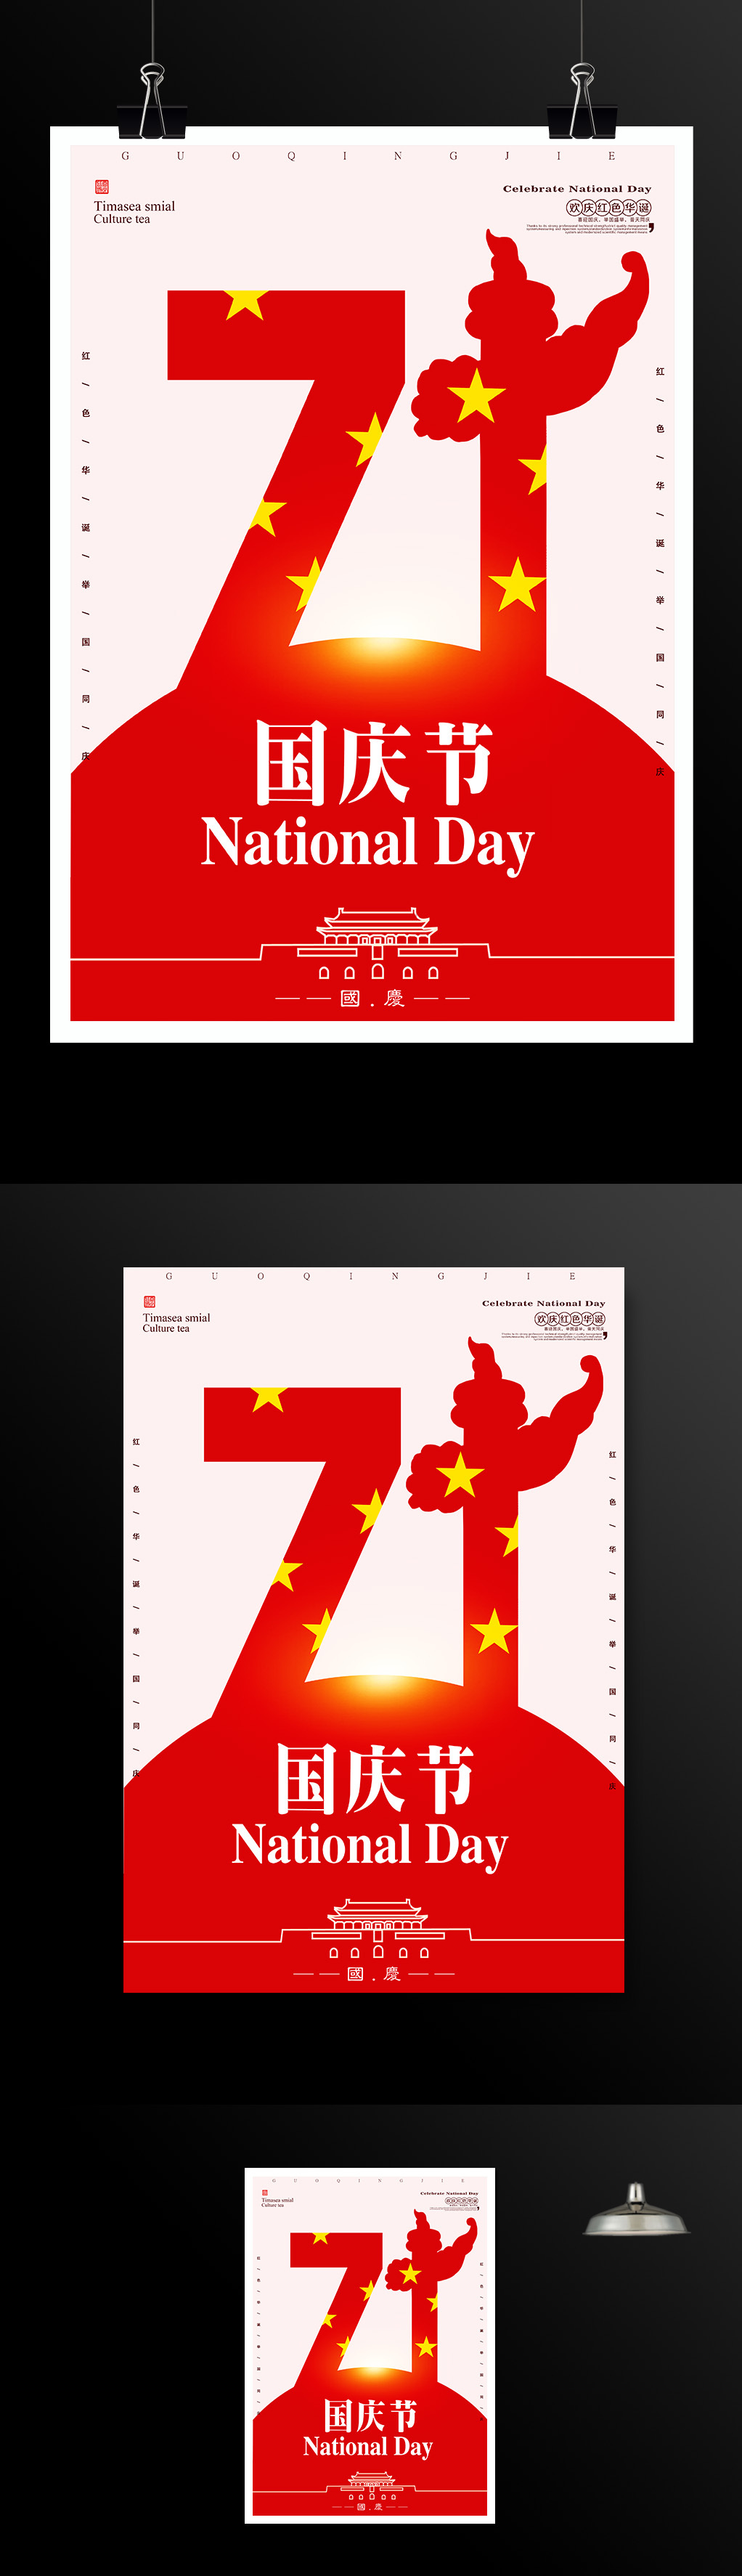 大气喜庆喜迎国庆节71周年海报